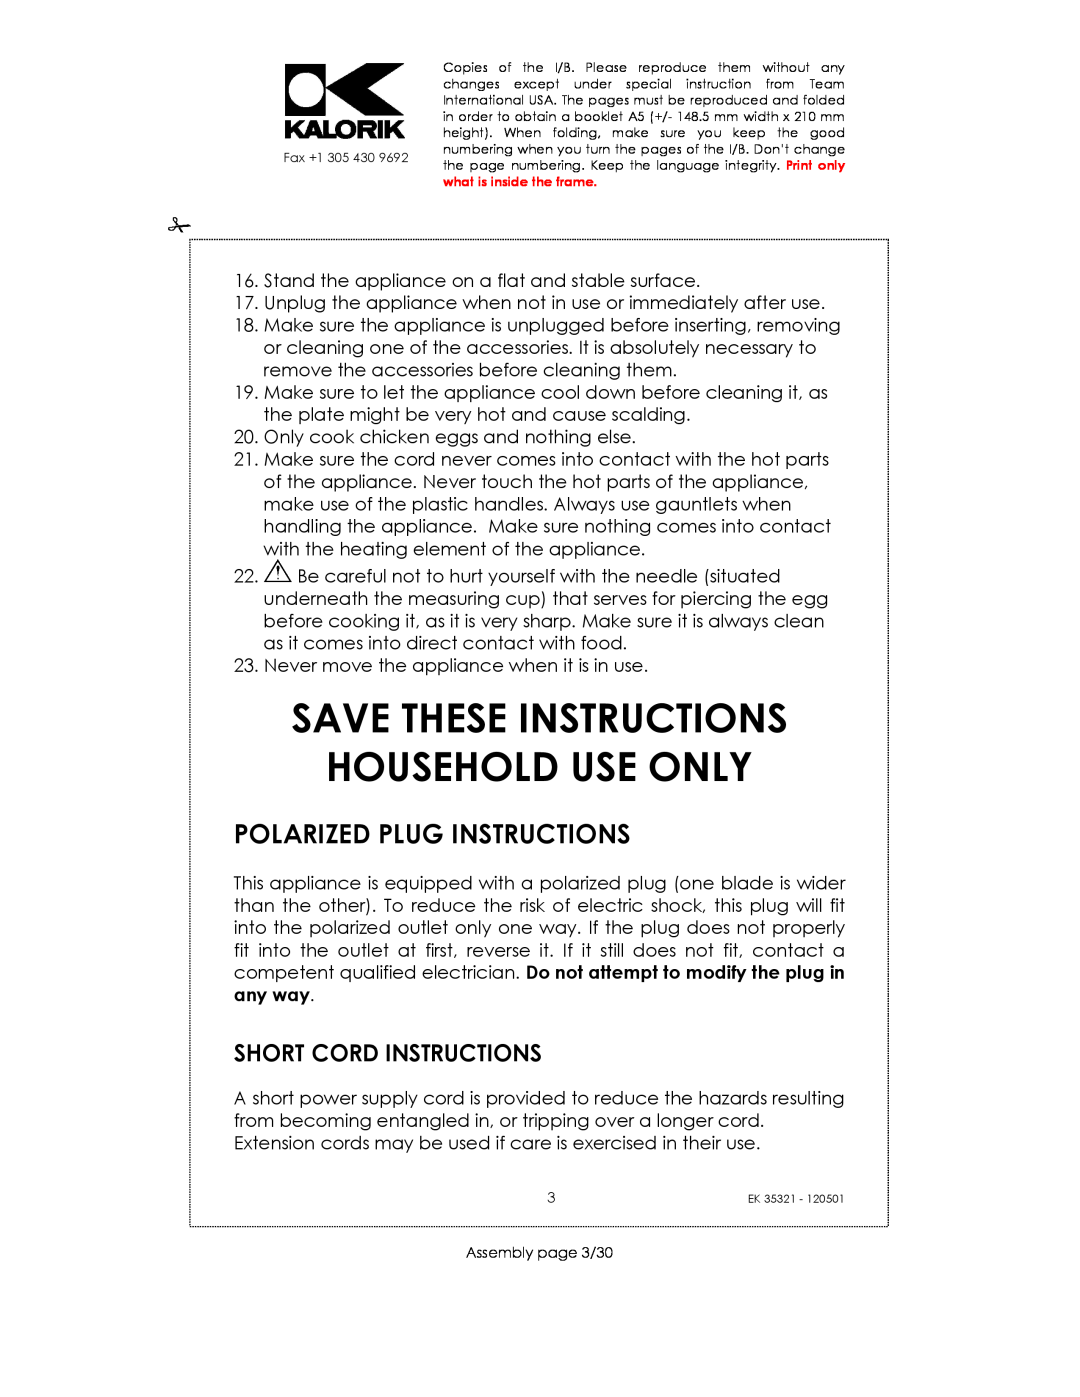 Kalorik EK35321 manual Save These Instructions Household Use Only, Polarized Plug Instructions, Short Cord Instructions 